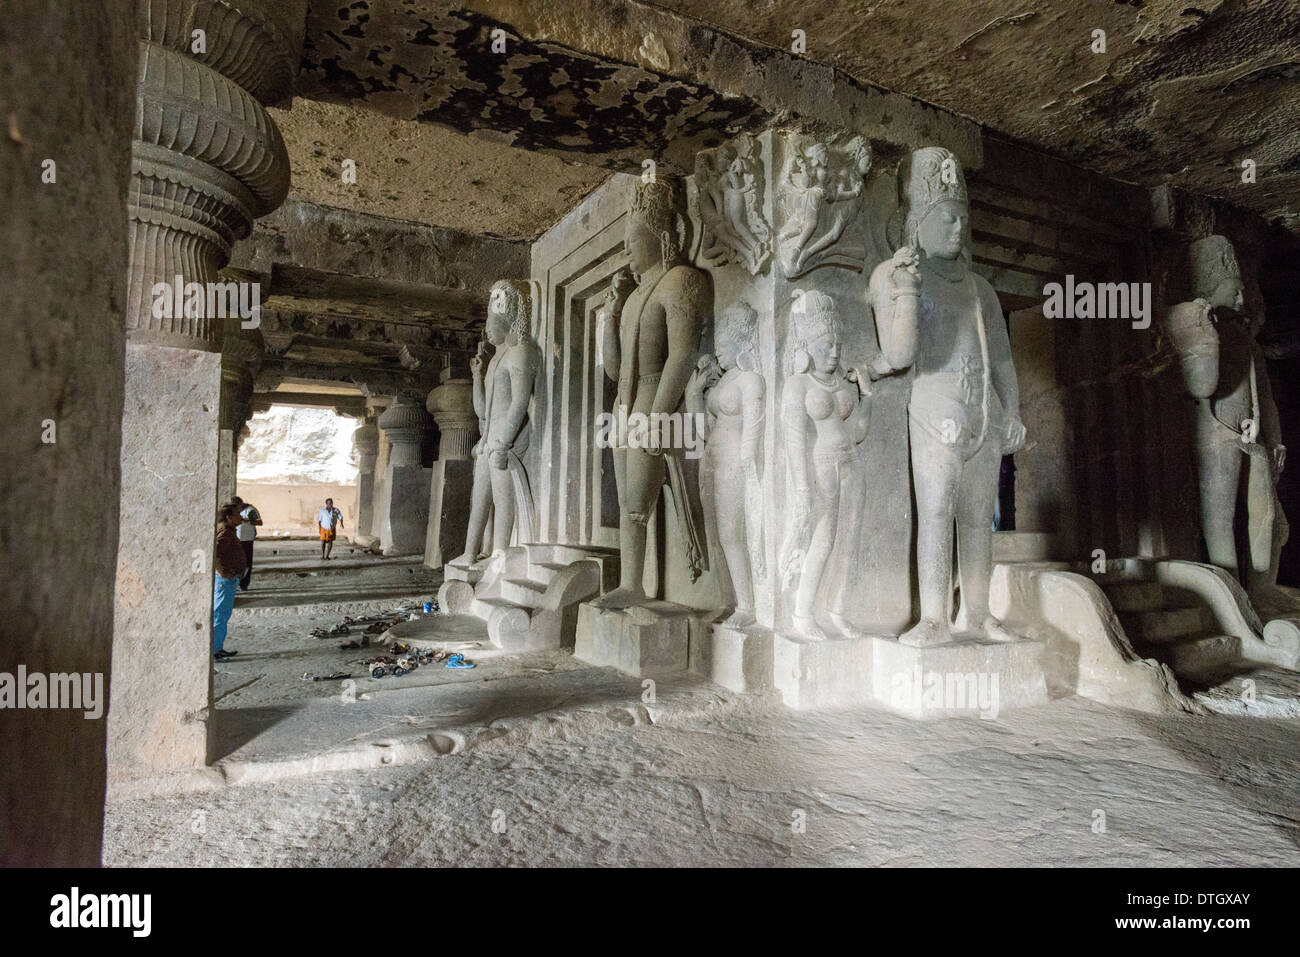 Sculptures en pierre dans la grotte 29, le Kailashanatha grotte, les grottes d'Ellora, UNESCO World Heritage Site, Ellora, Maharashtra, Inde Banque D'Images